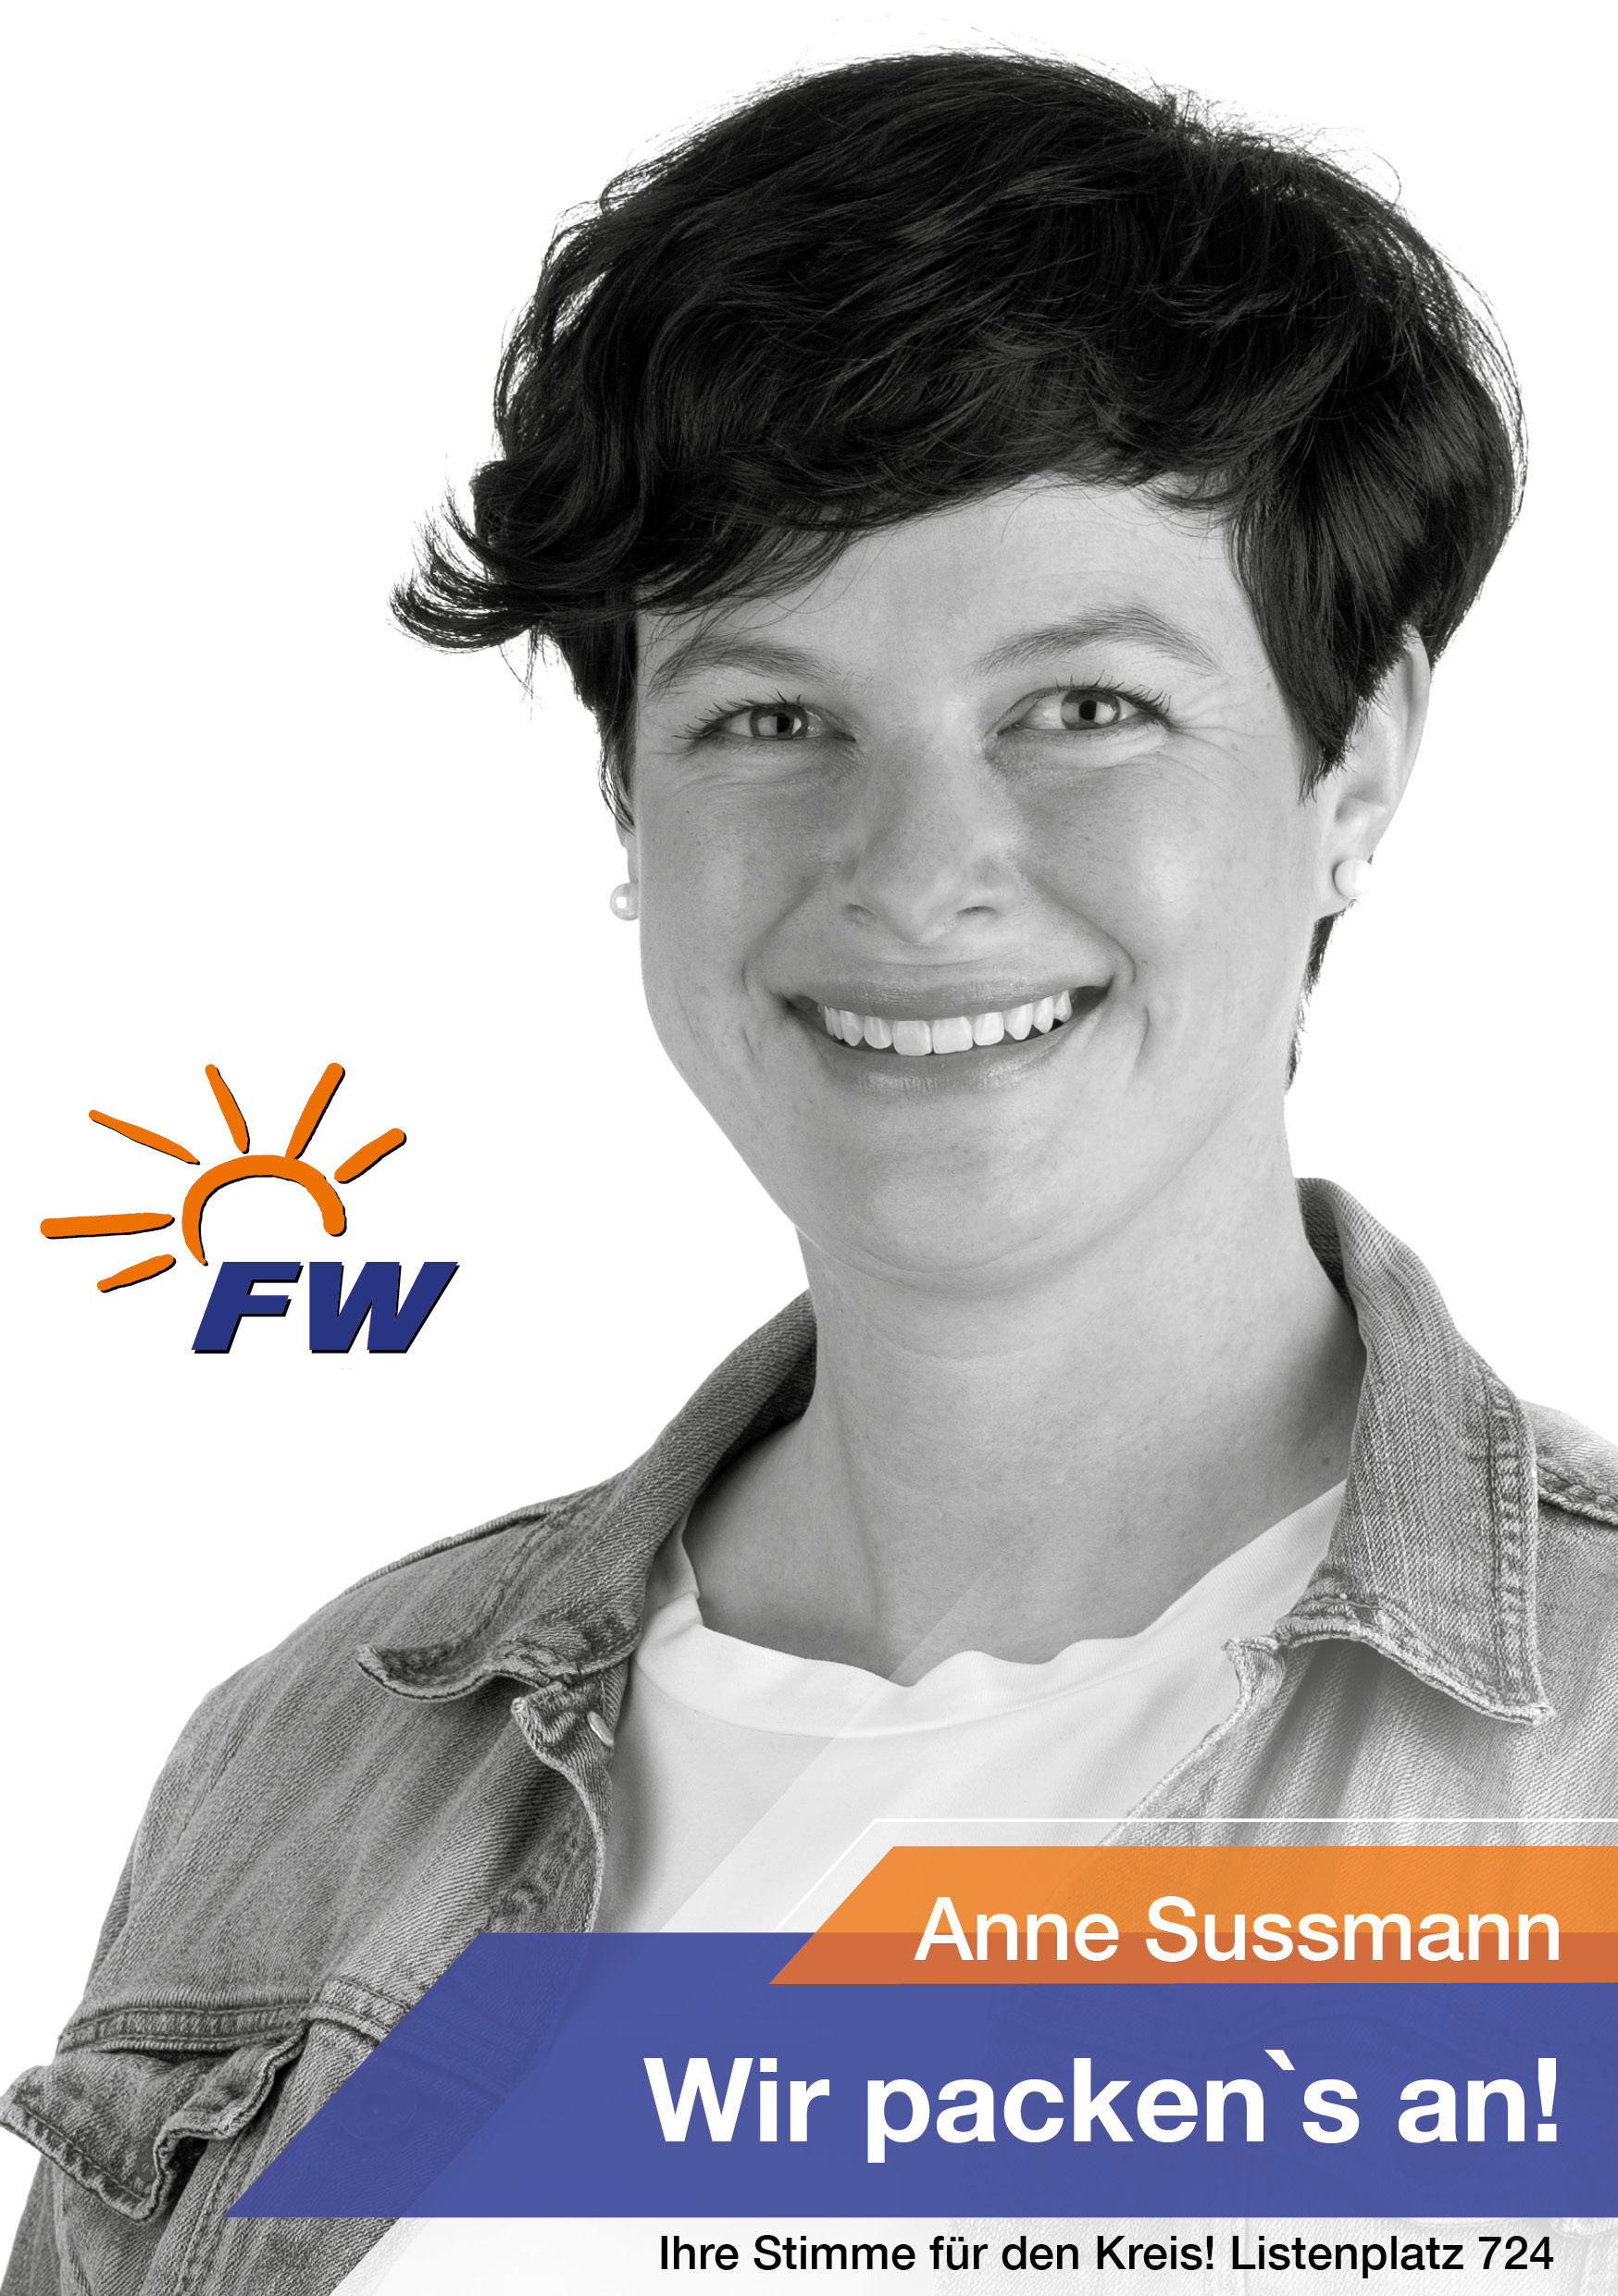 Anne Sussmann